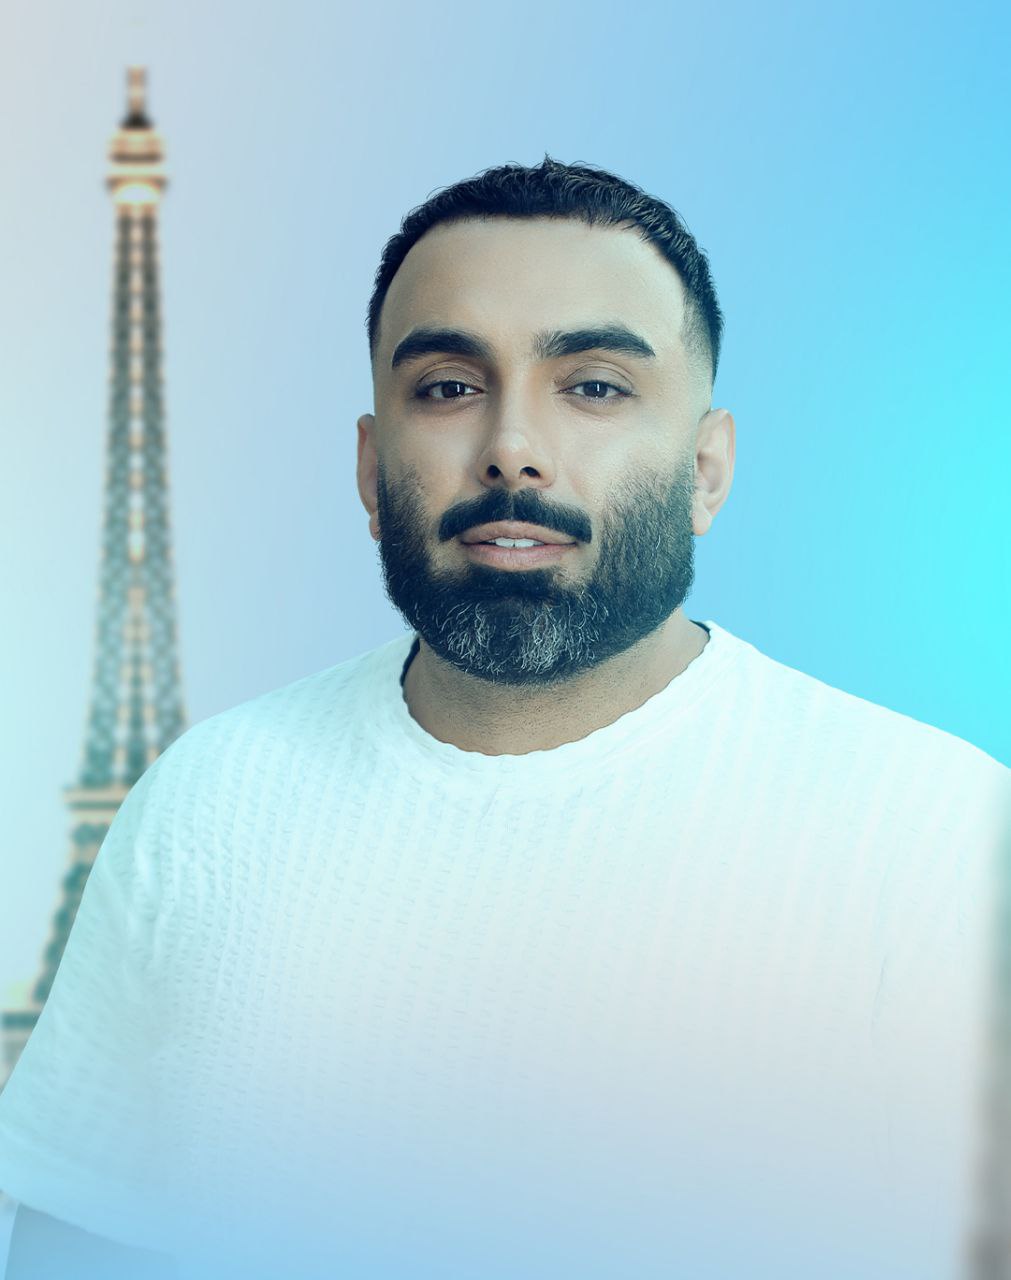  اولین کنسرت یک خواننده پاپ ایرانی در پاریس